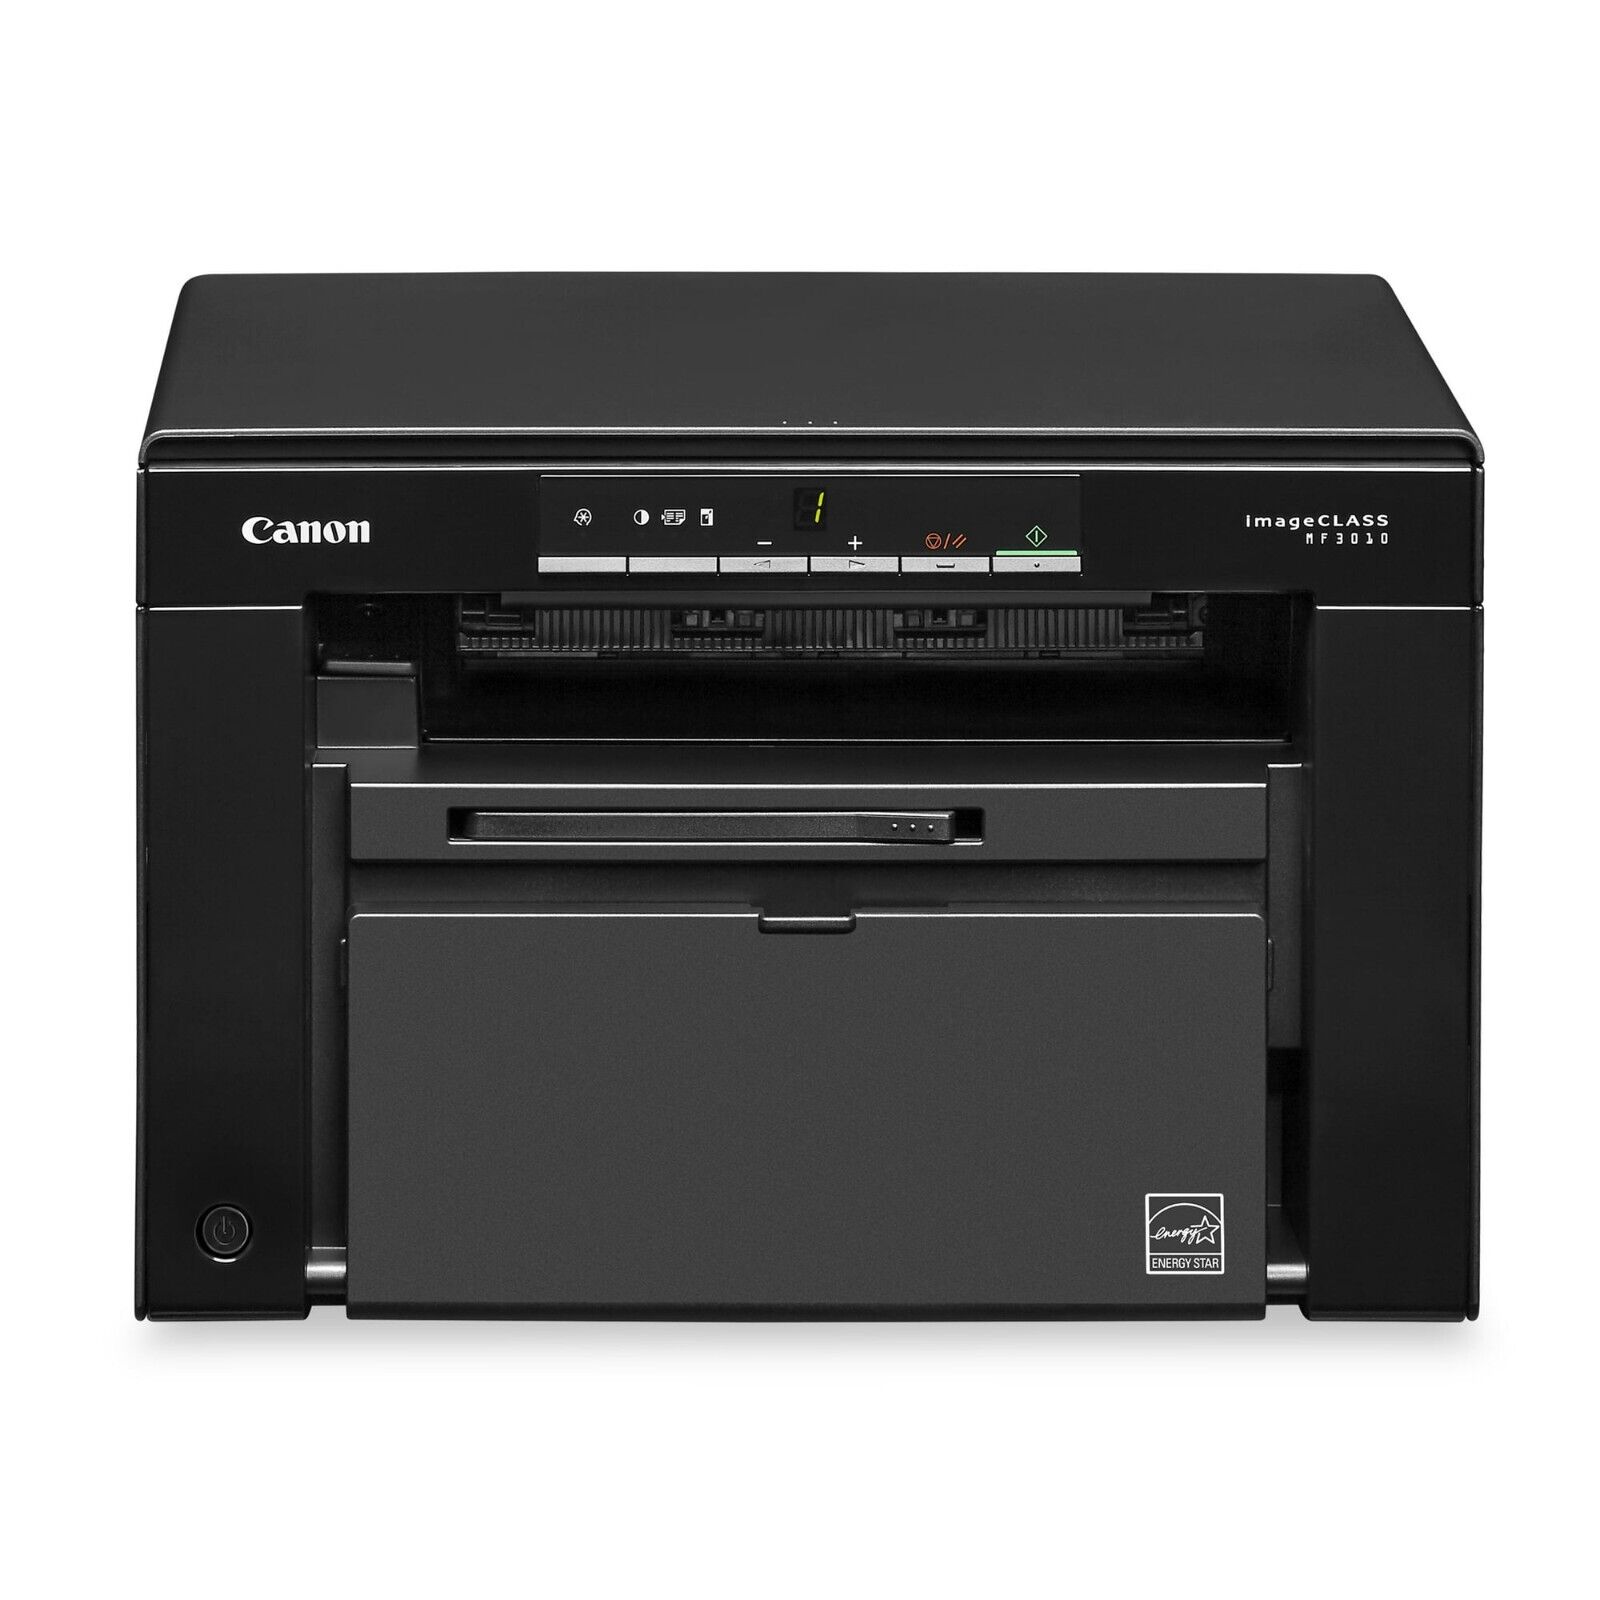 Canon imageCLASS MF3010 Wired Monochrome Laser Printer, Copy, Scan™